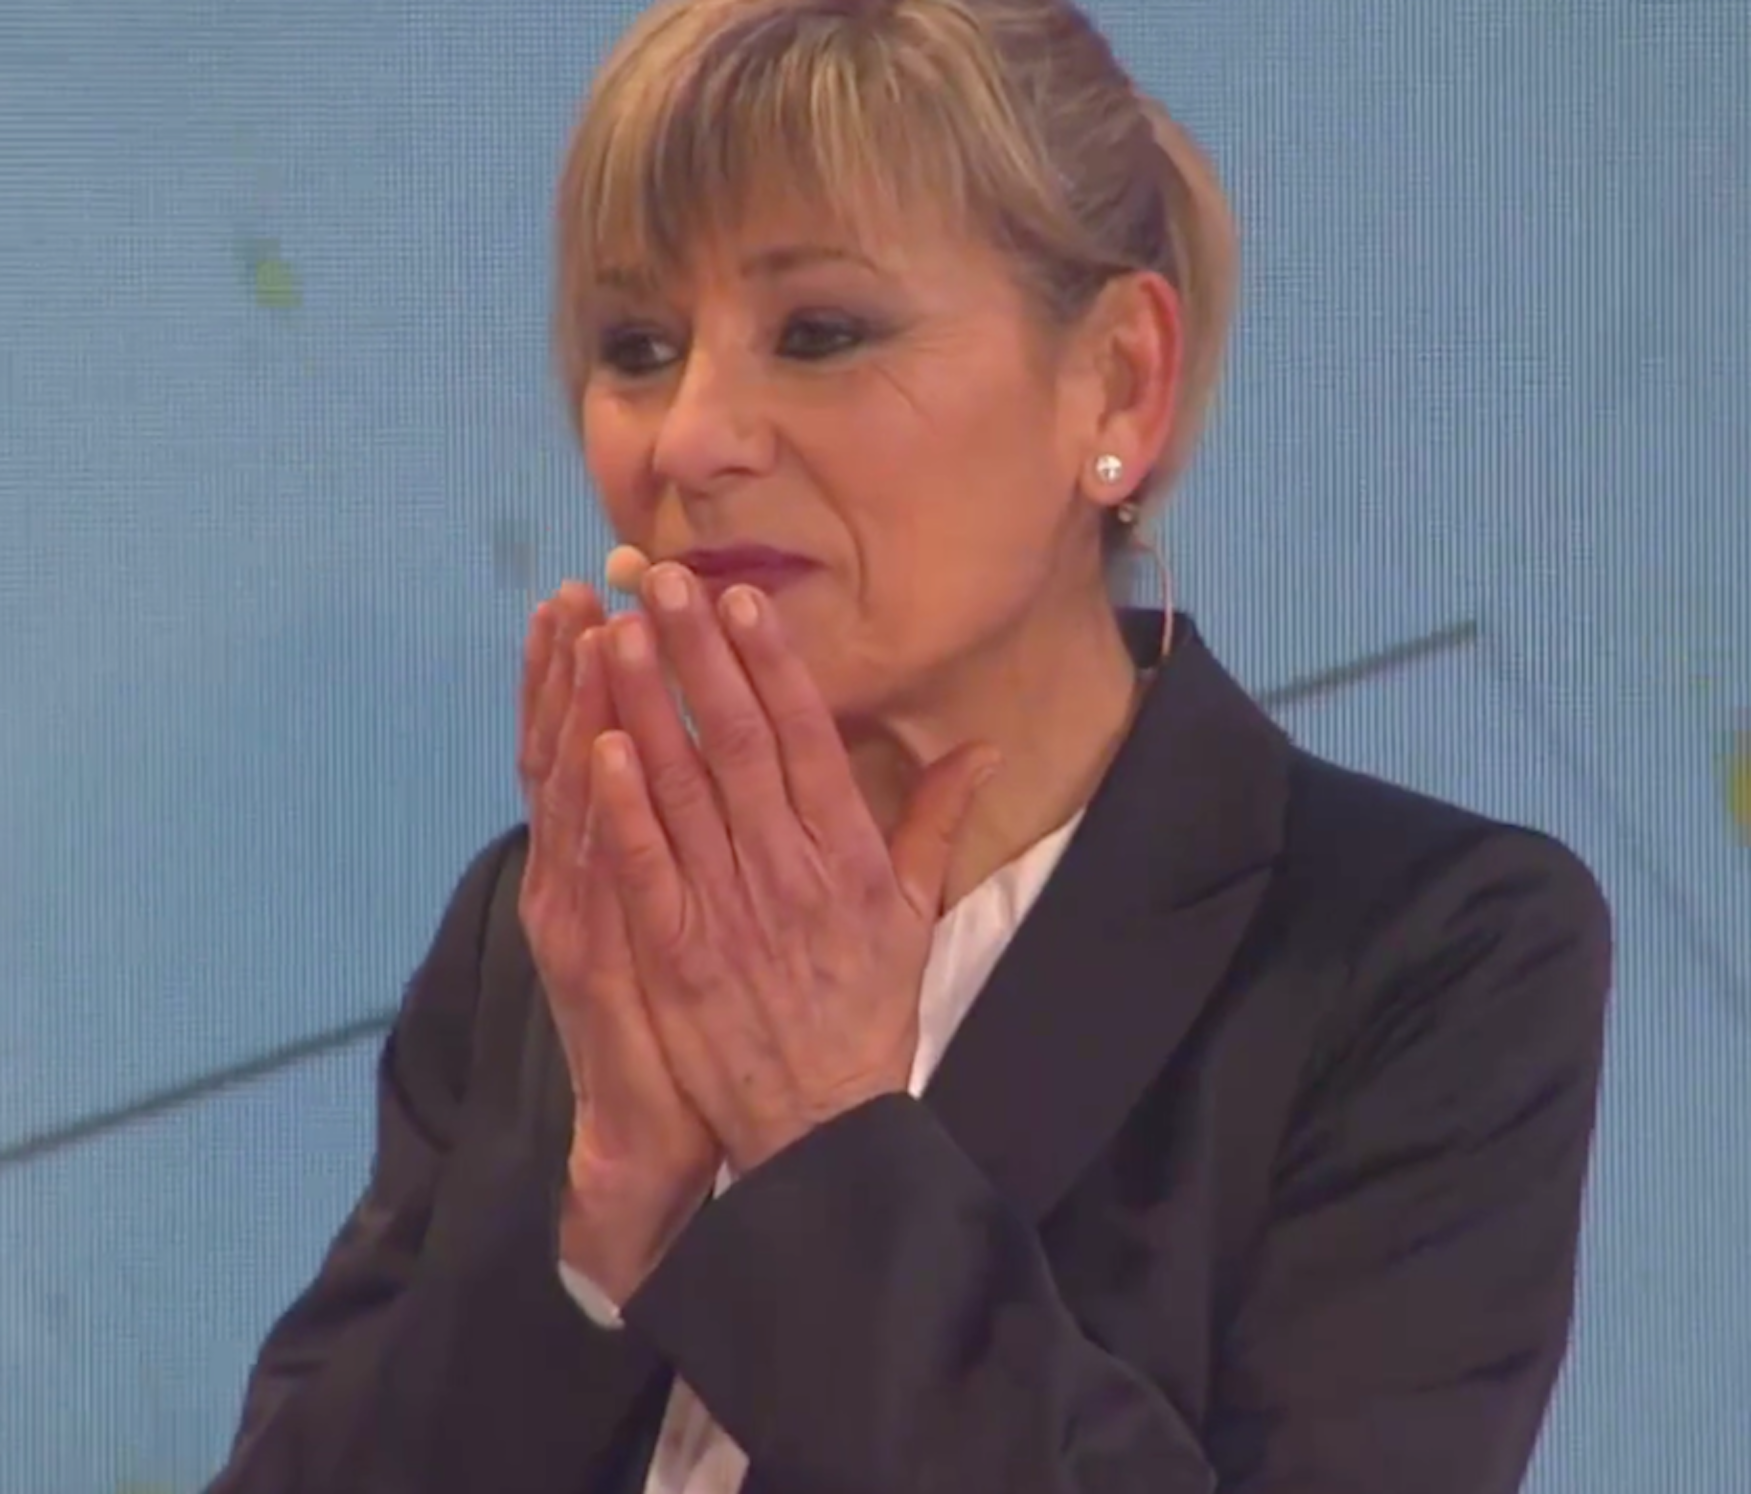 Espectacular Mari Pau Huguet als 57, s'emociona a TV3 recordant la seva infància